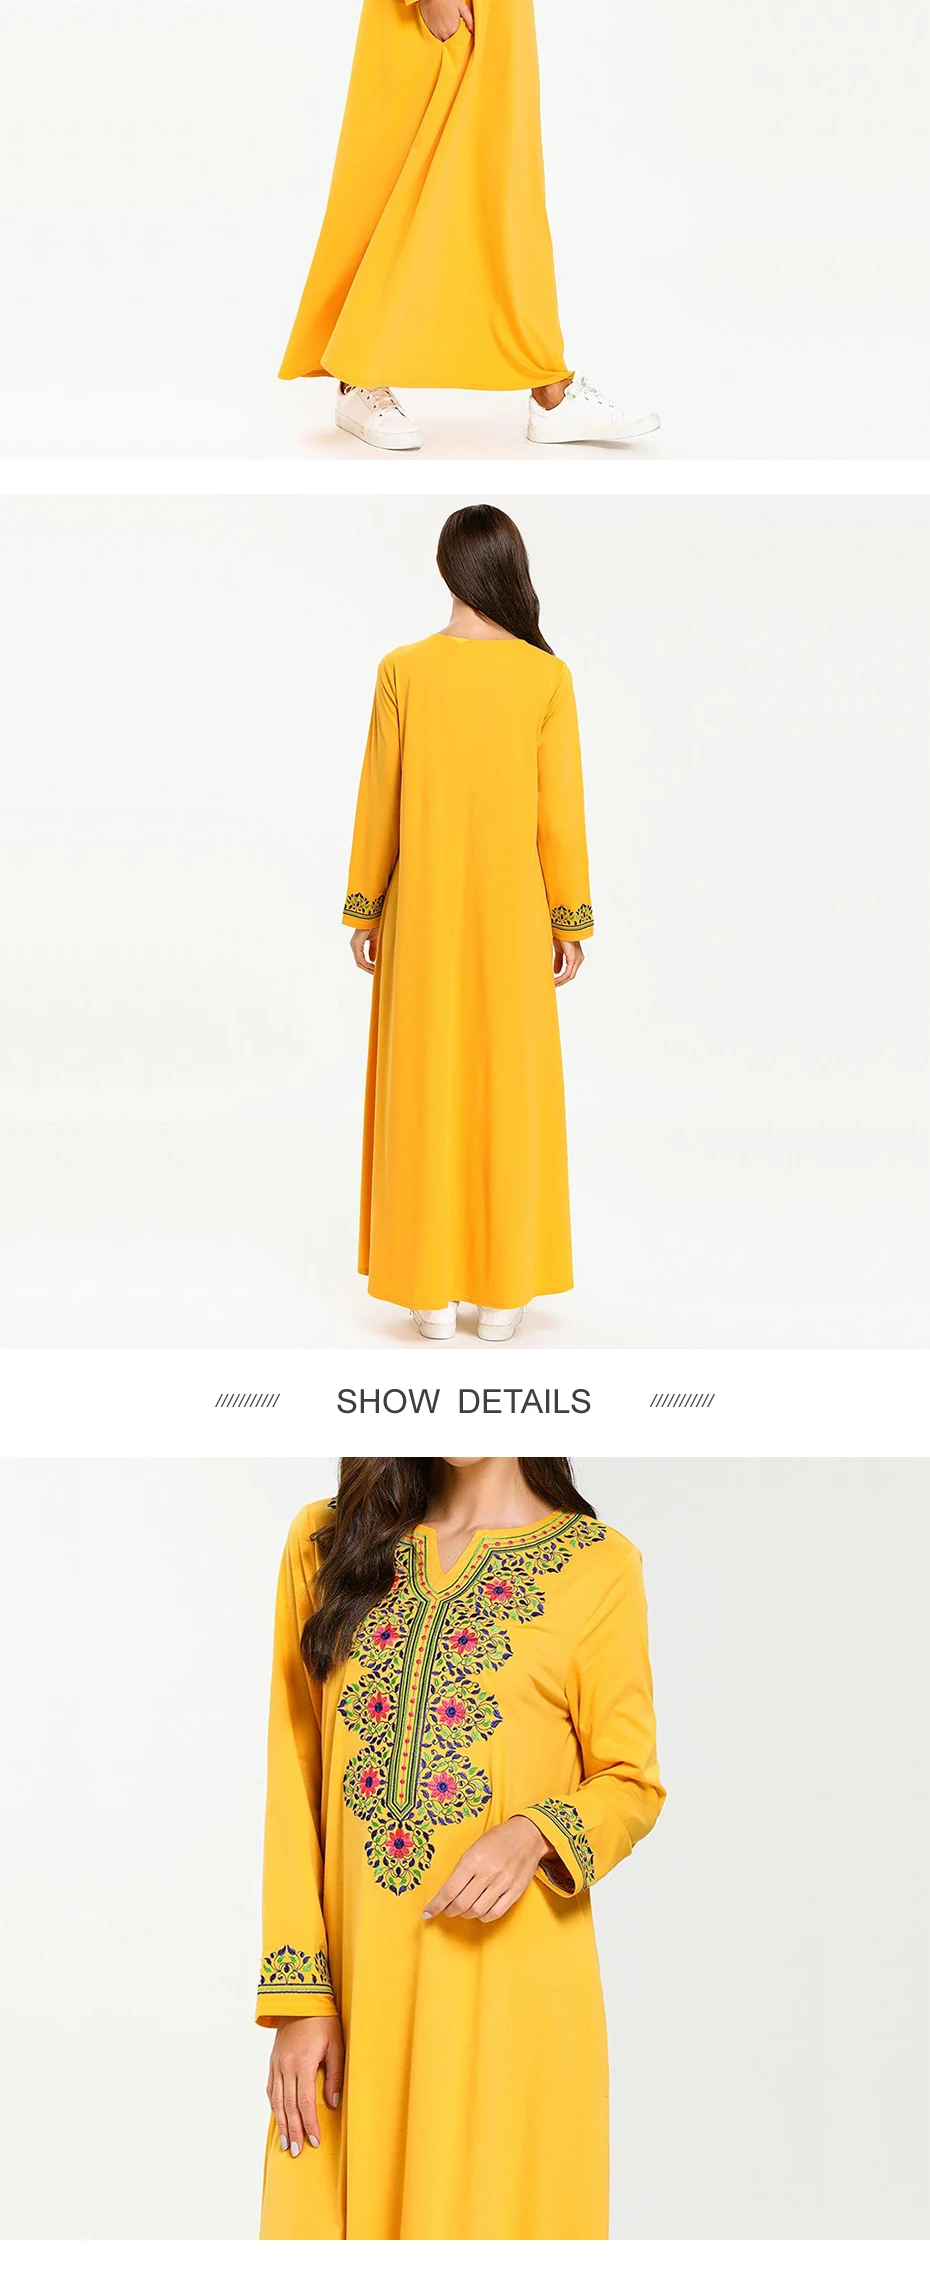 7700 Плюс Размер Макси платье абайя мода вышитый желтый длинный рукав платье мусульманские женщины длинное платье